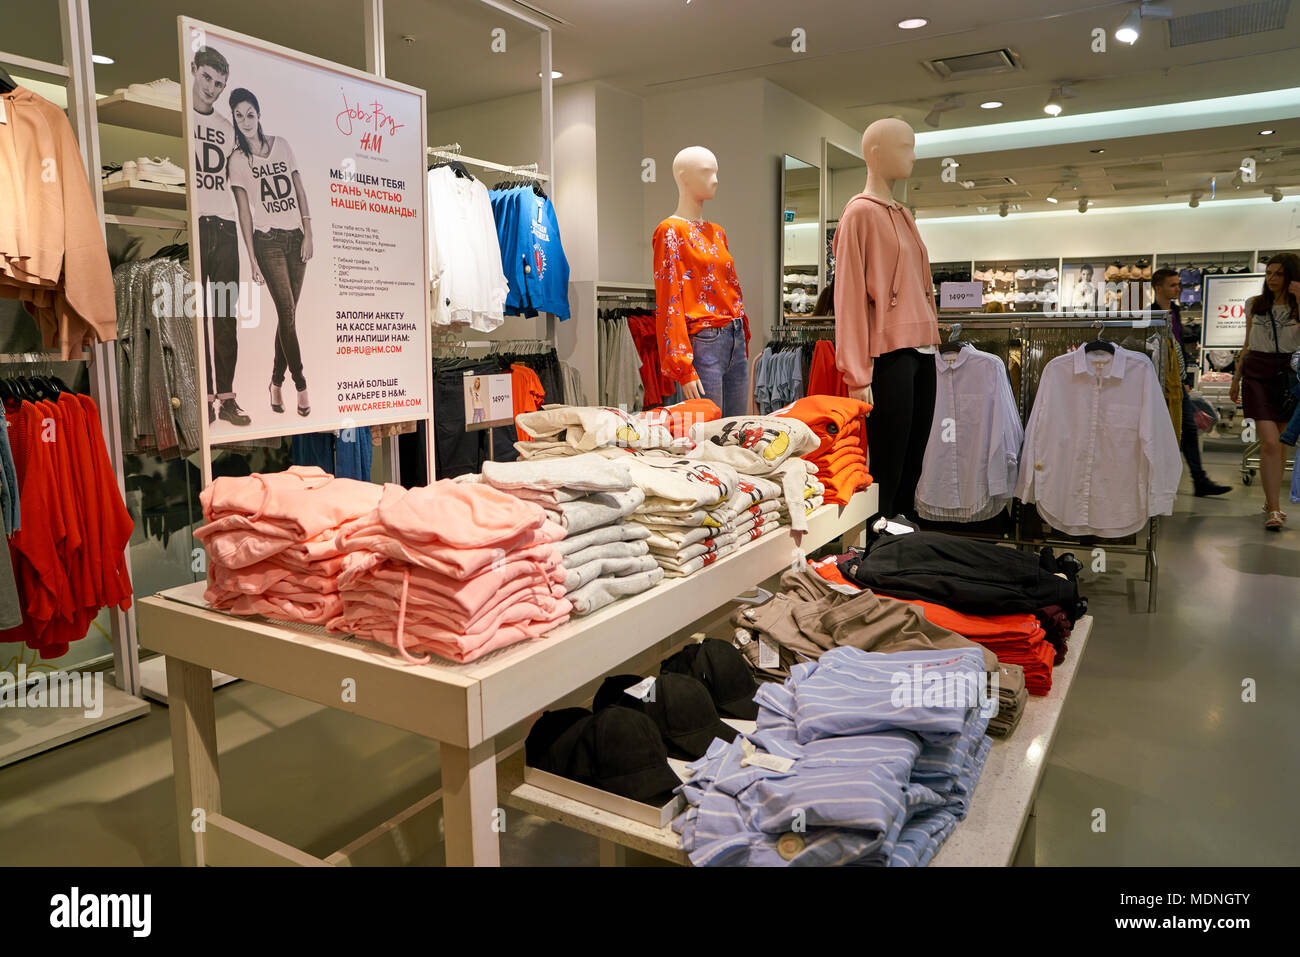 Sankt Petersburg, Russland - ca. August 2017: In der H&M Store bei Galeria  Shopping Center. H&M ist ein schwedischen multinationalen Bekleidung -  Einzelhandel Standort Stockfotografie - Alamy